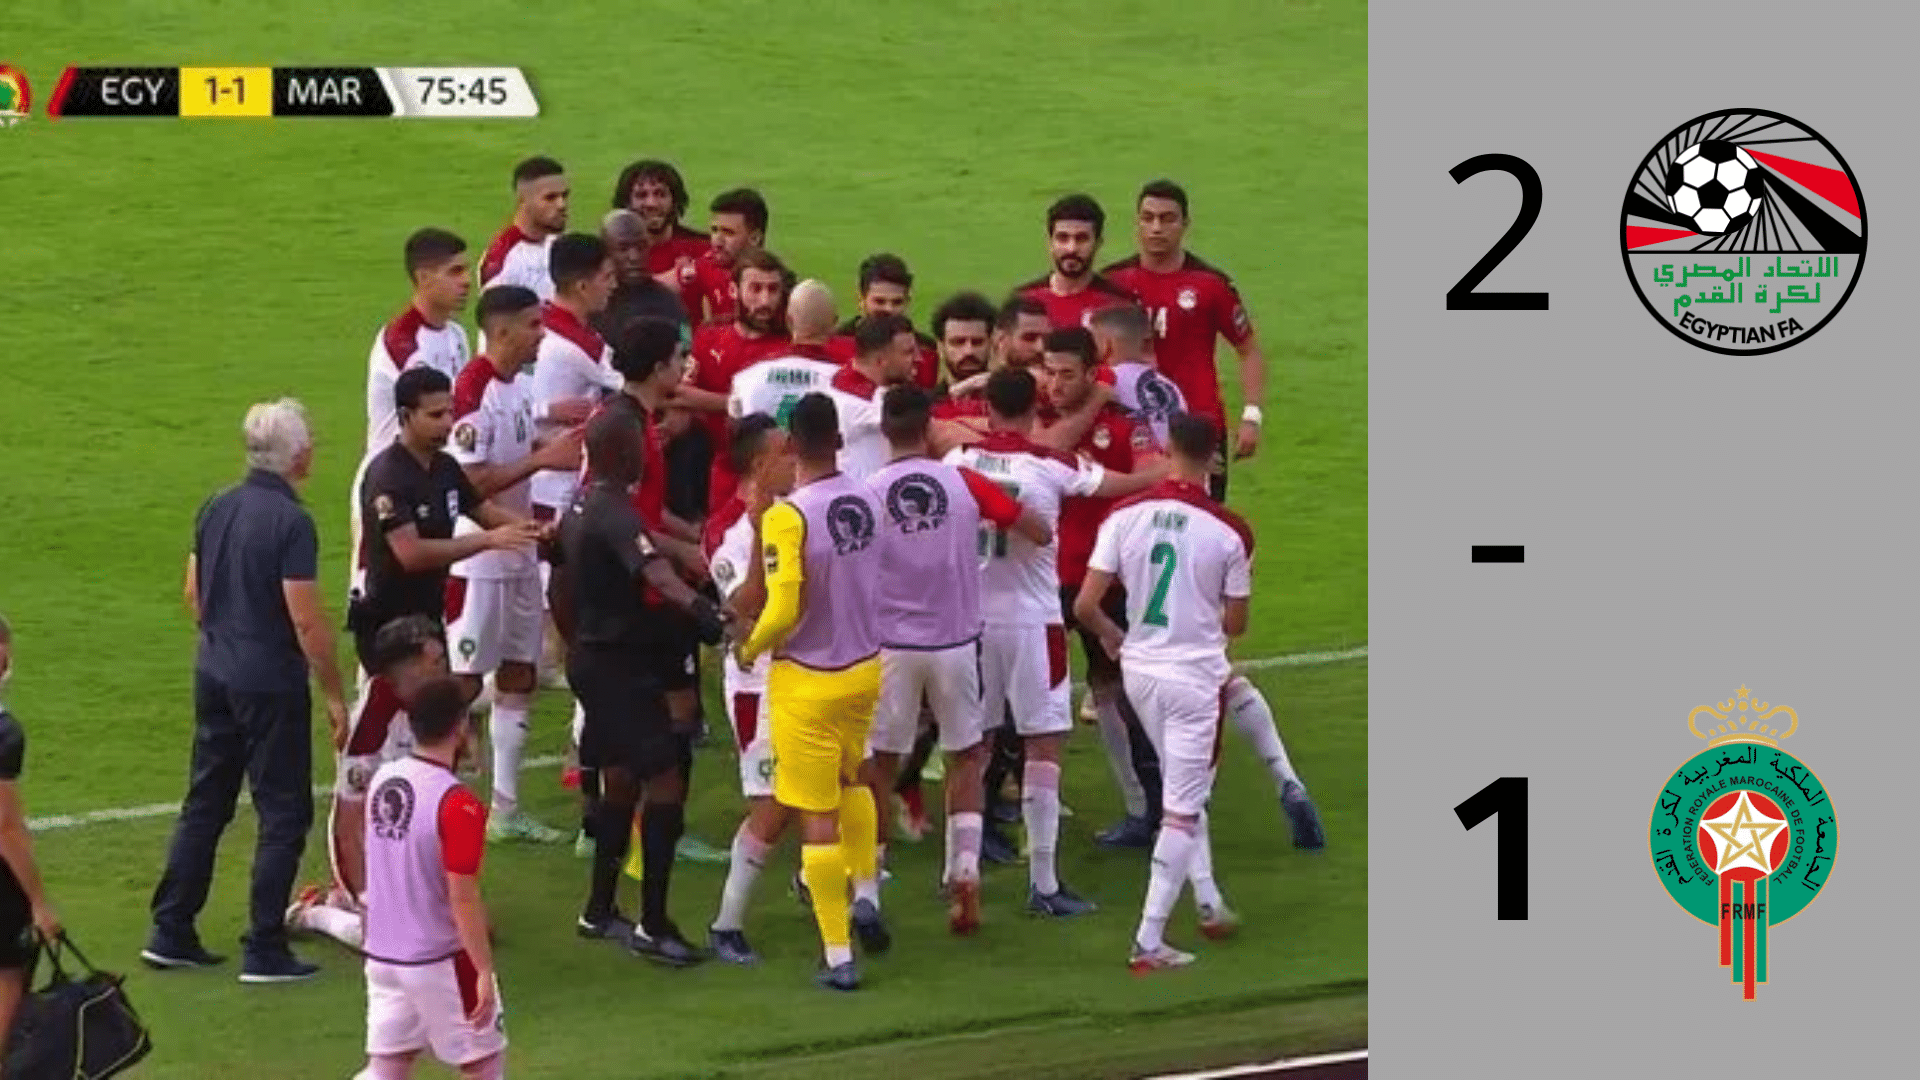 مراسل MBC مصر يكشف لبرنامج الحكاية تفاصيل المشكلة التي حدثت بين لاعبي منتخب مصر والمغرب بعد انتهاء المباراة 2 30/1/2022 - 10:57 م